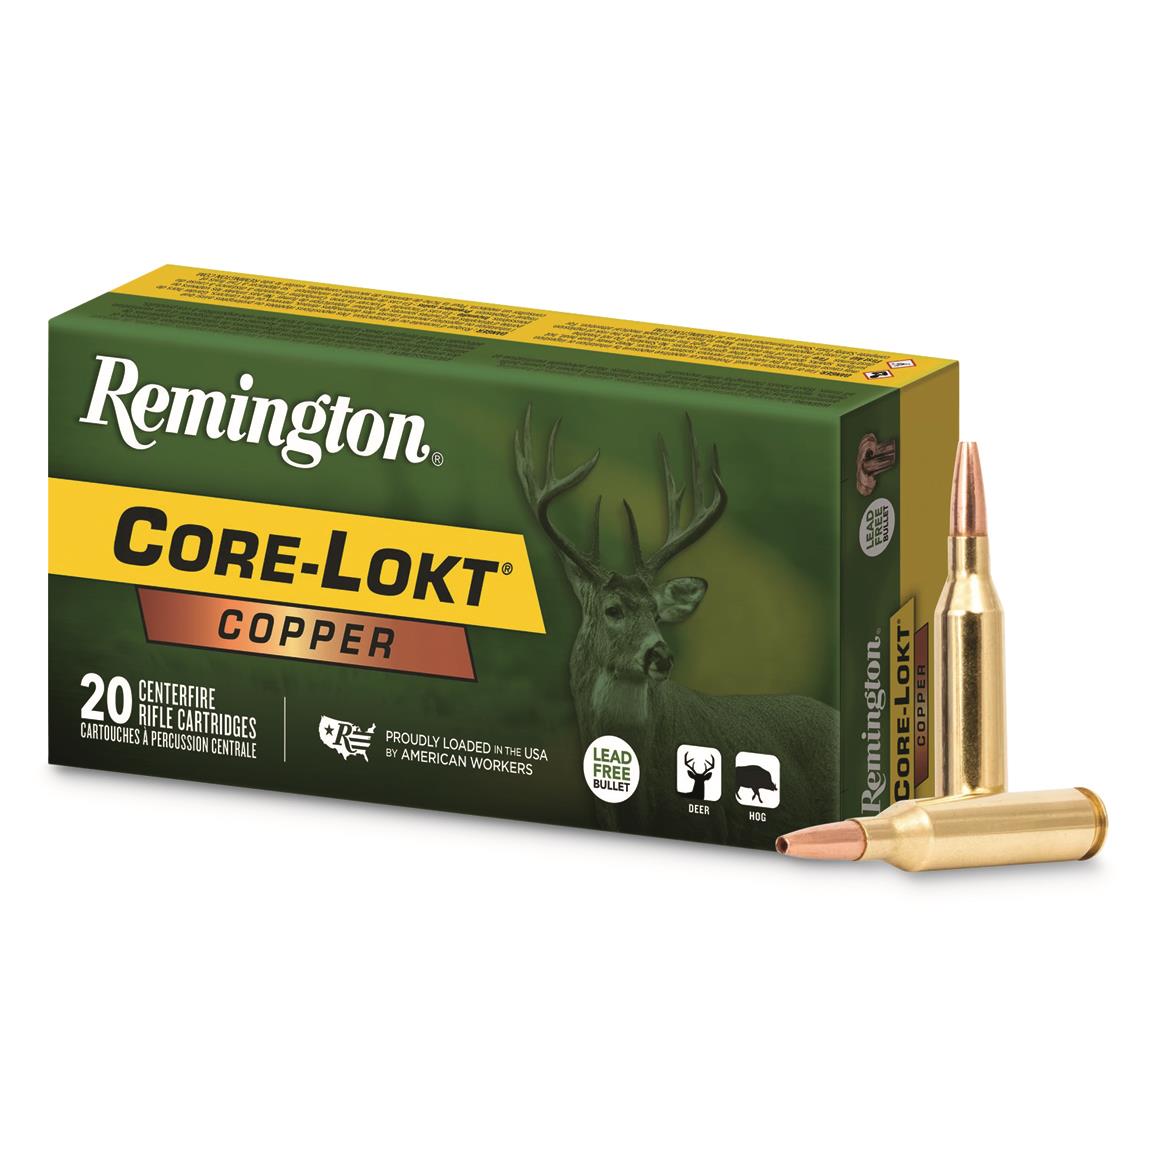 Remington Core-Lokt Copper, .300 Win. Mag., Copper HP, 180 Grain, 20 Rounds